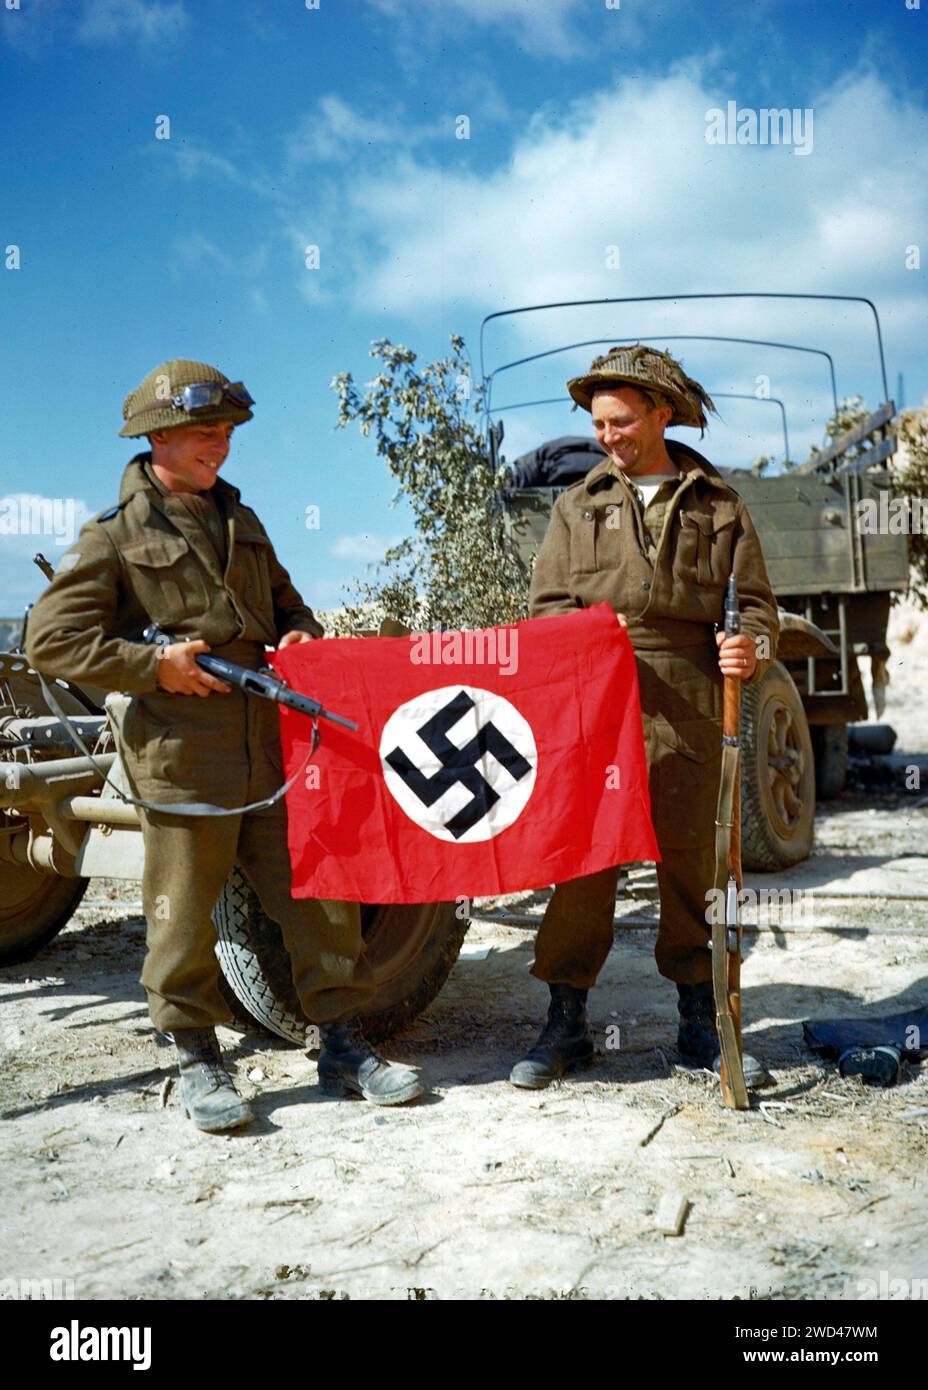 VICINO A HAUT MESNIL, FRANCIA - 10 agosto 1944 - due soldati canadesi alzano una bandiera nazista che catturarono in una cava a sud di Hautmesnil, Francia - Foto Stock